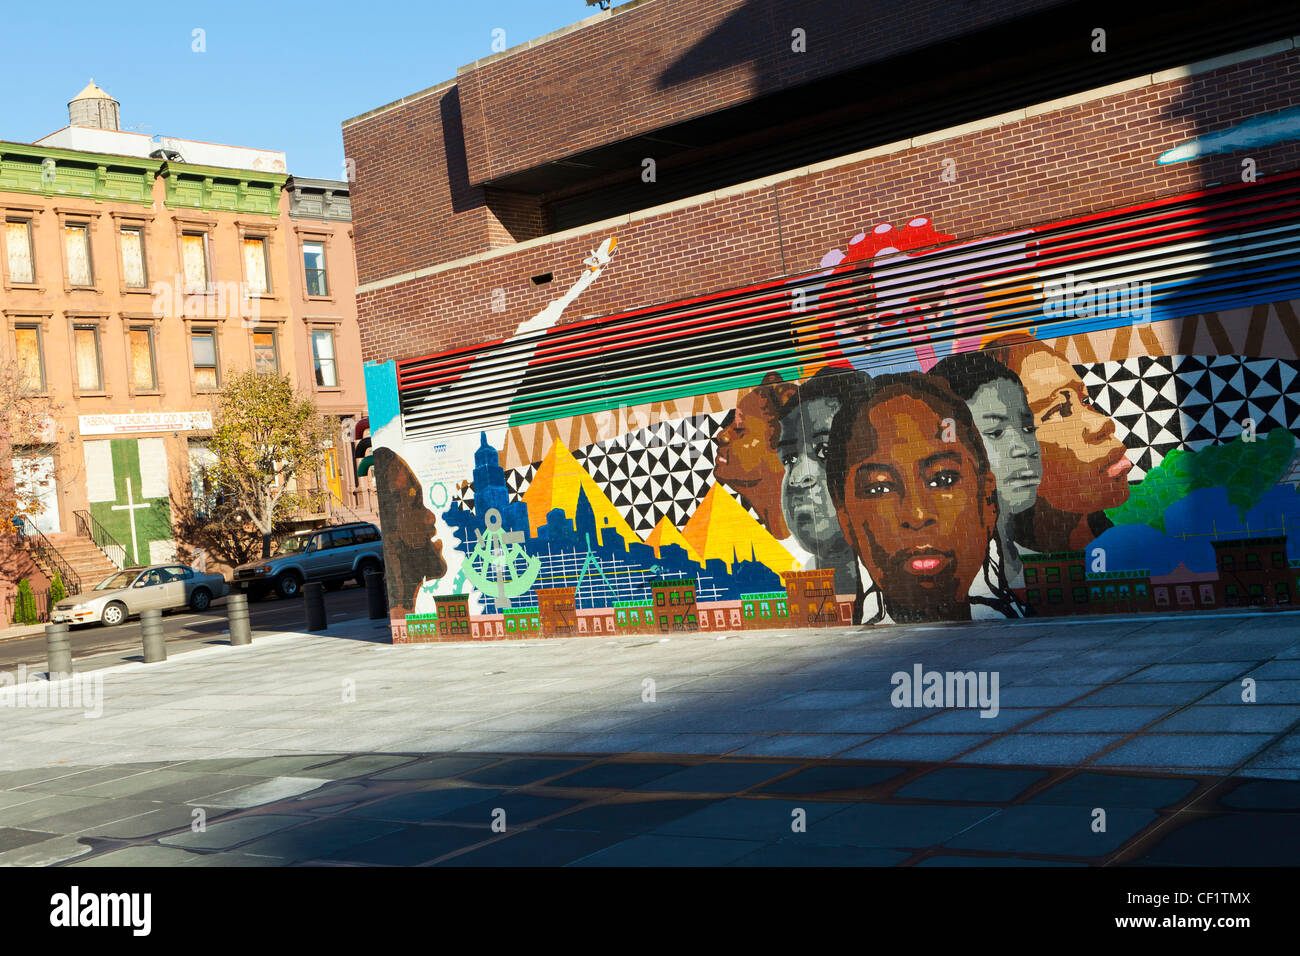 Bunte Wand-Wandbild in Harlem, New York, Vereinigte Staaten von Amerika Stockfoto